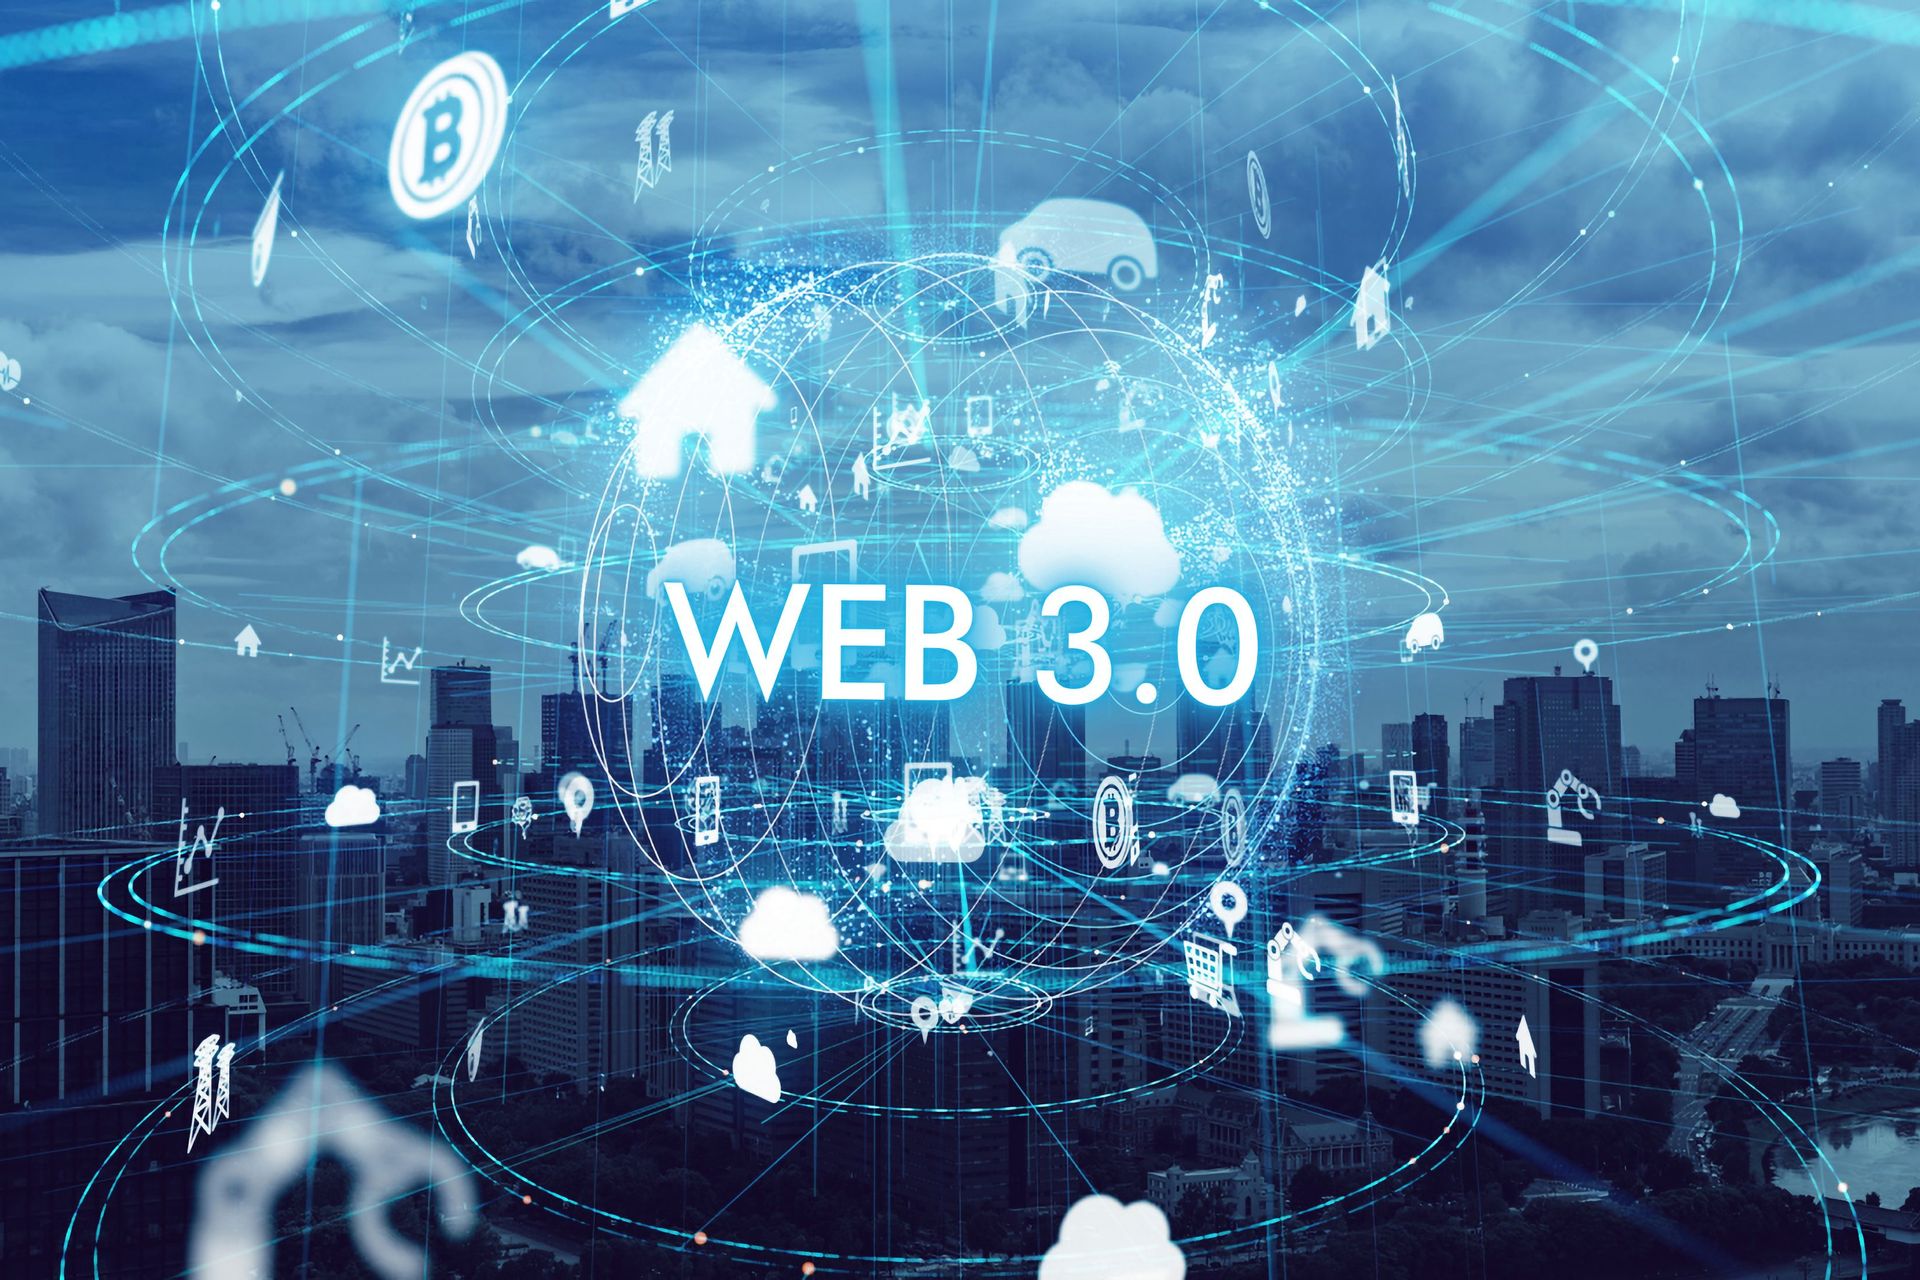 Web 3.0 ja Metaverse edustavat todella teknologisen ihmisen tulevaisuutta ja Internetin tulevaisuutta